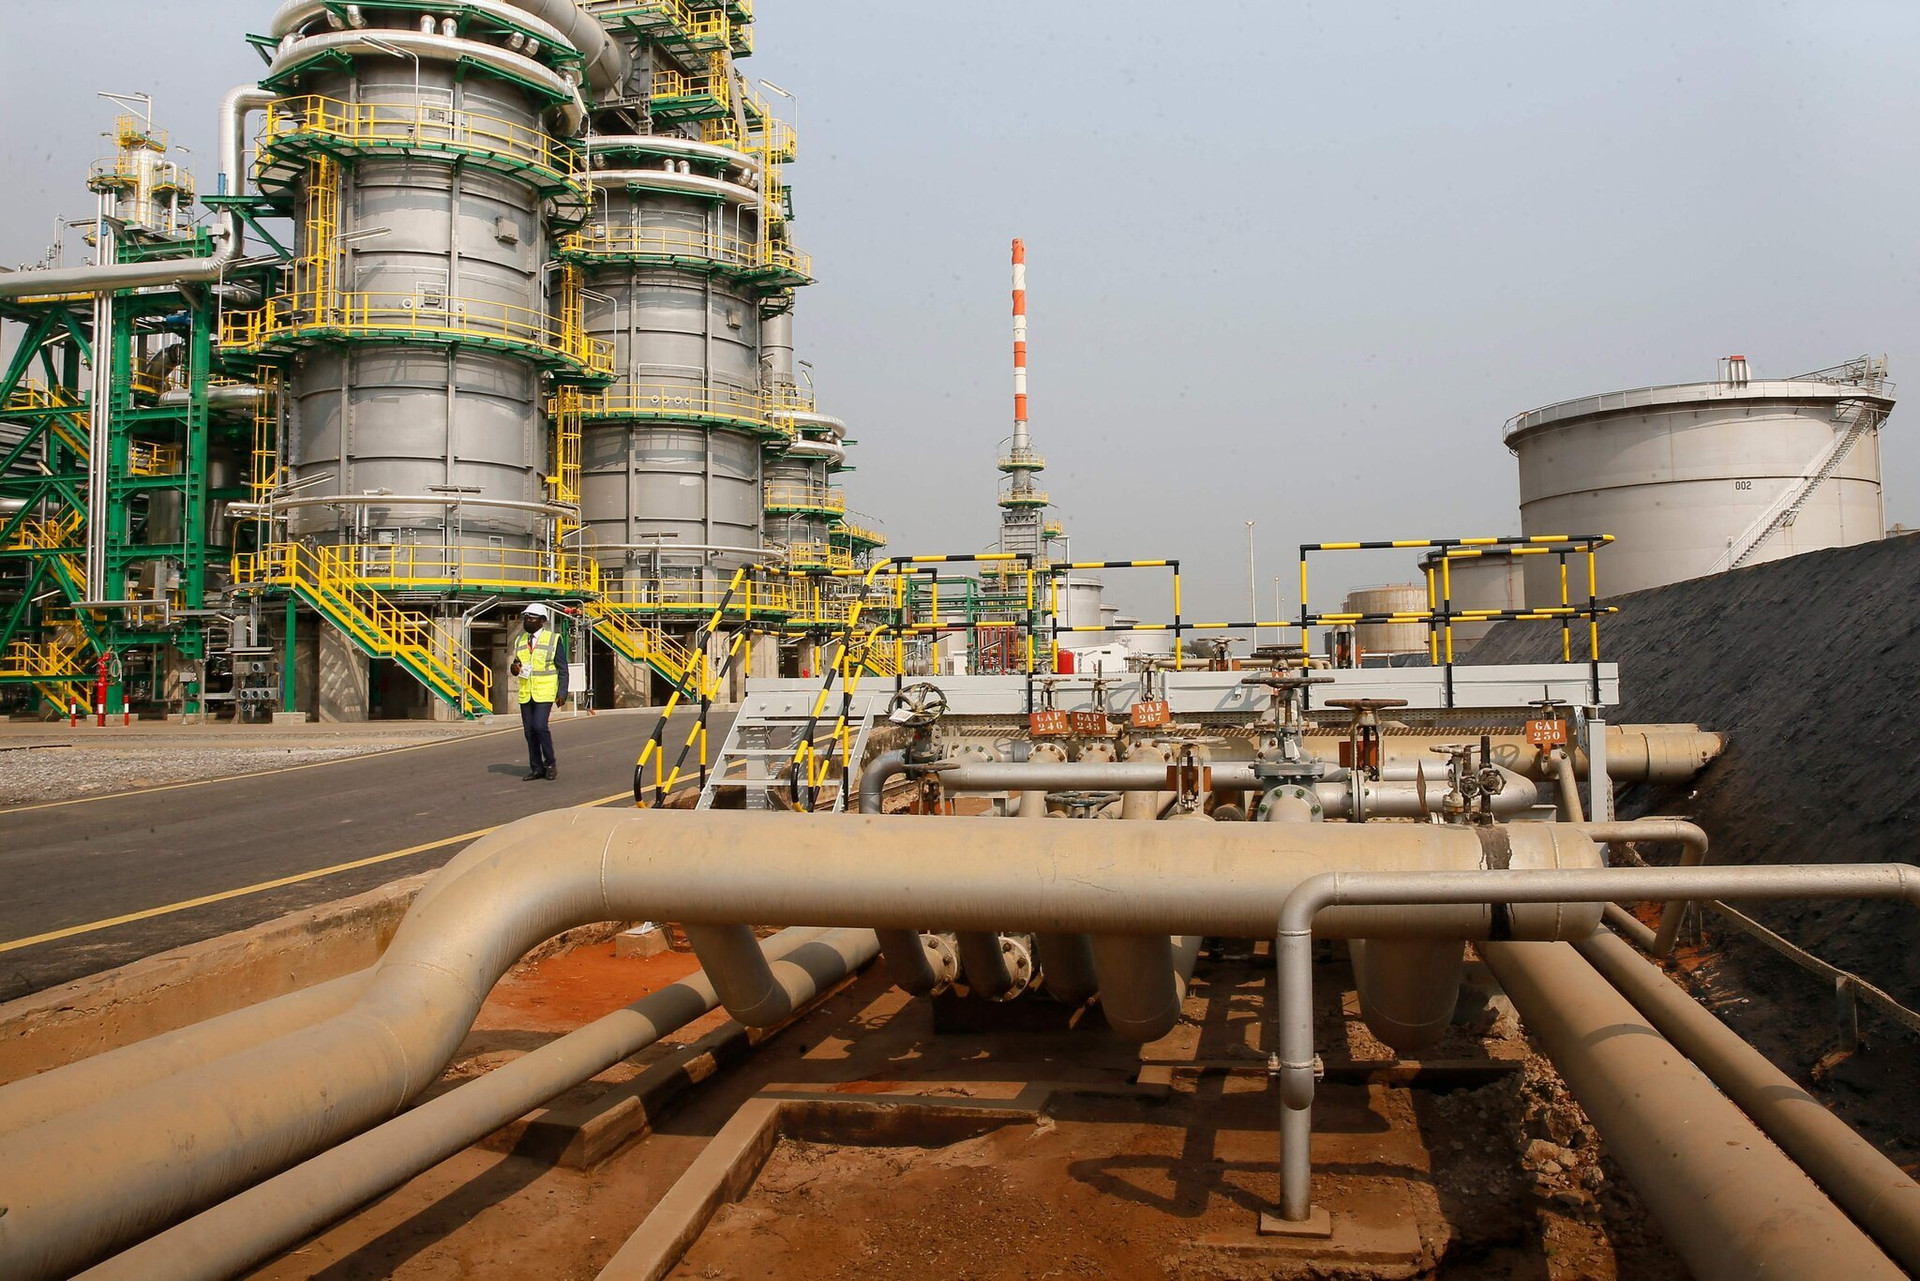 Quốc gia vừa tuyên bố rời OPEC: “Tổ chức này không còn phù hợp với giá trị và lợi ích của chúng tôi’ - Ảnh 1.